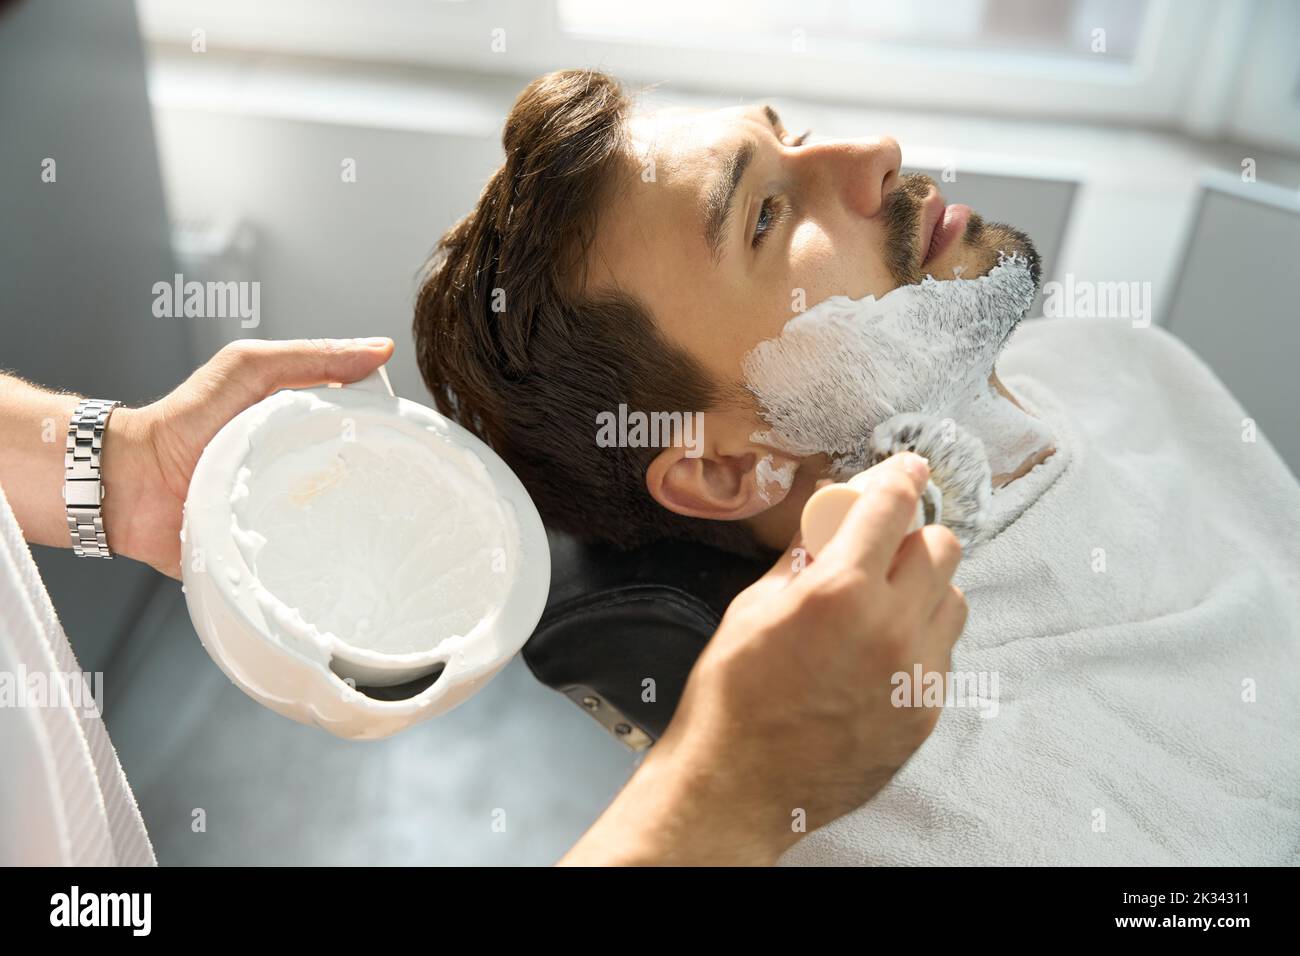 Un hair-groomer qualificato si prepara a dare al cliente una buona rasatura Foto Stock